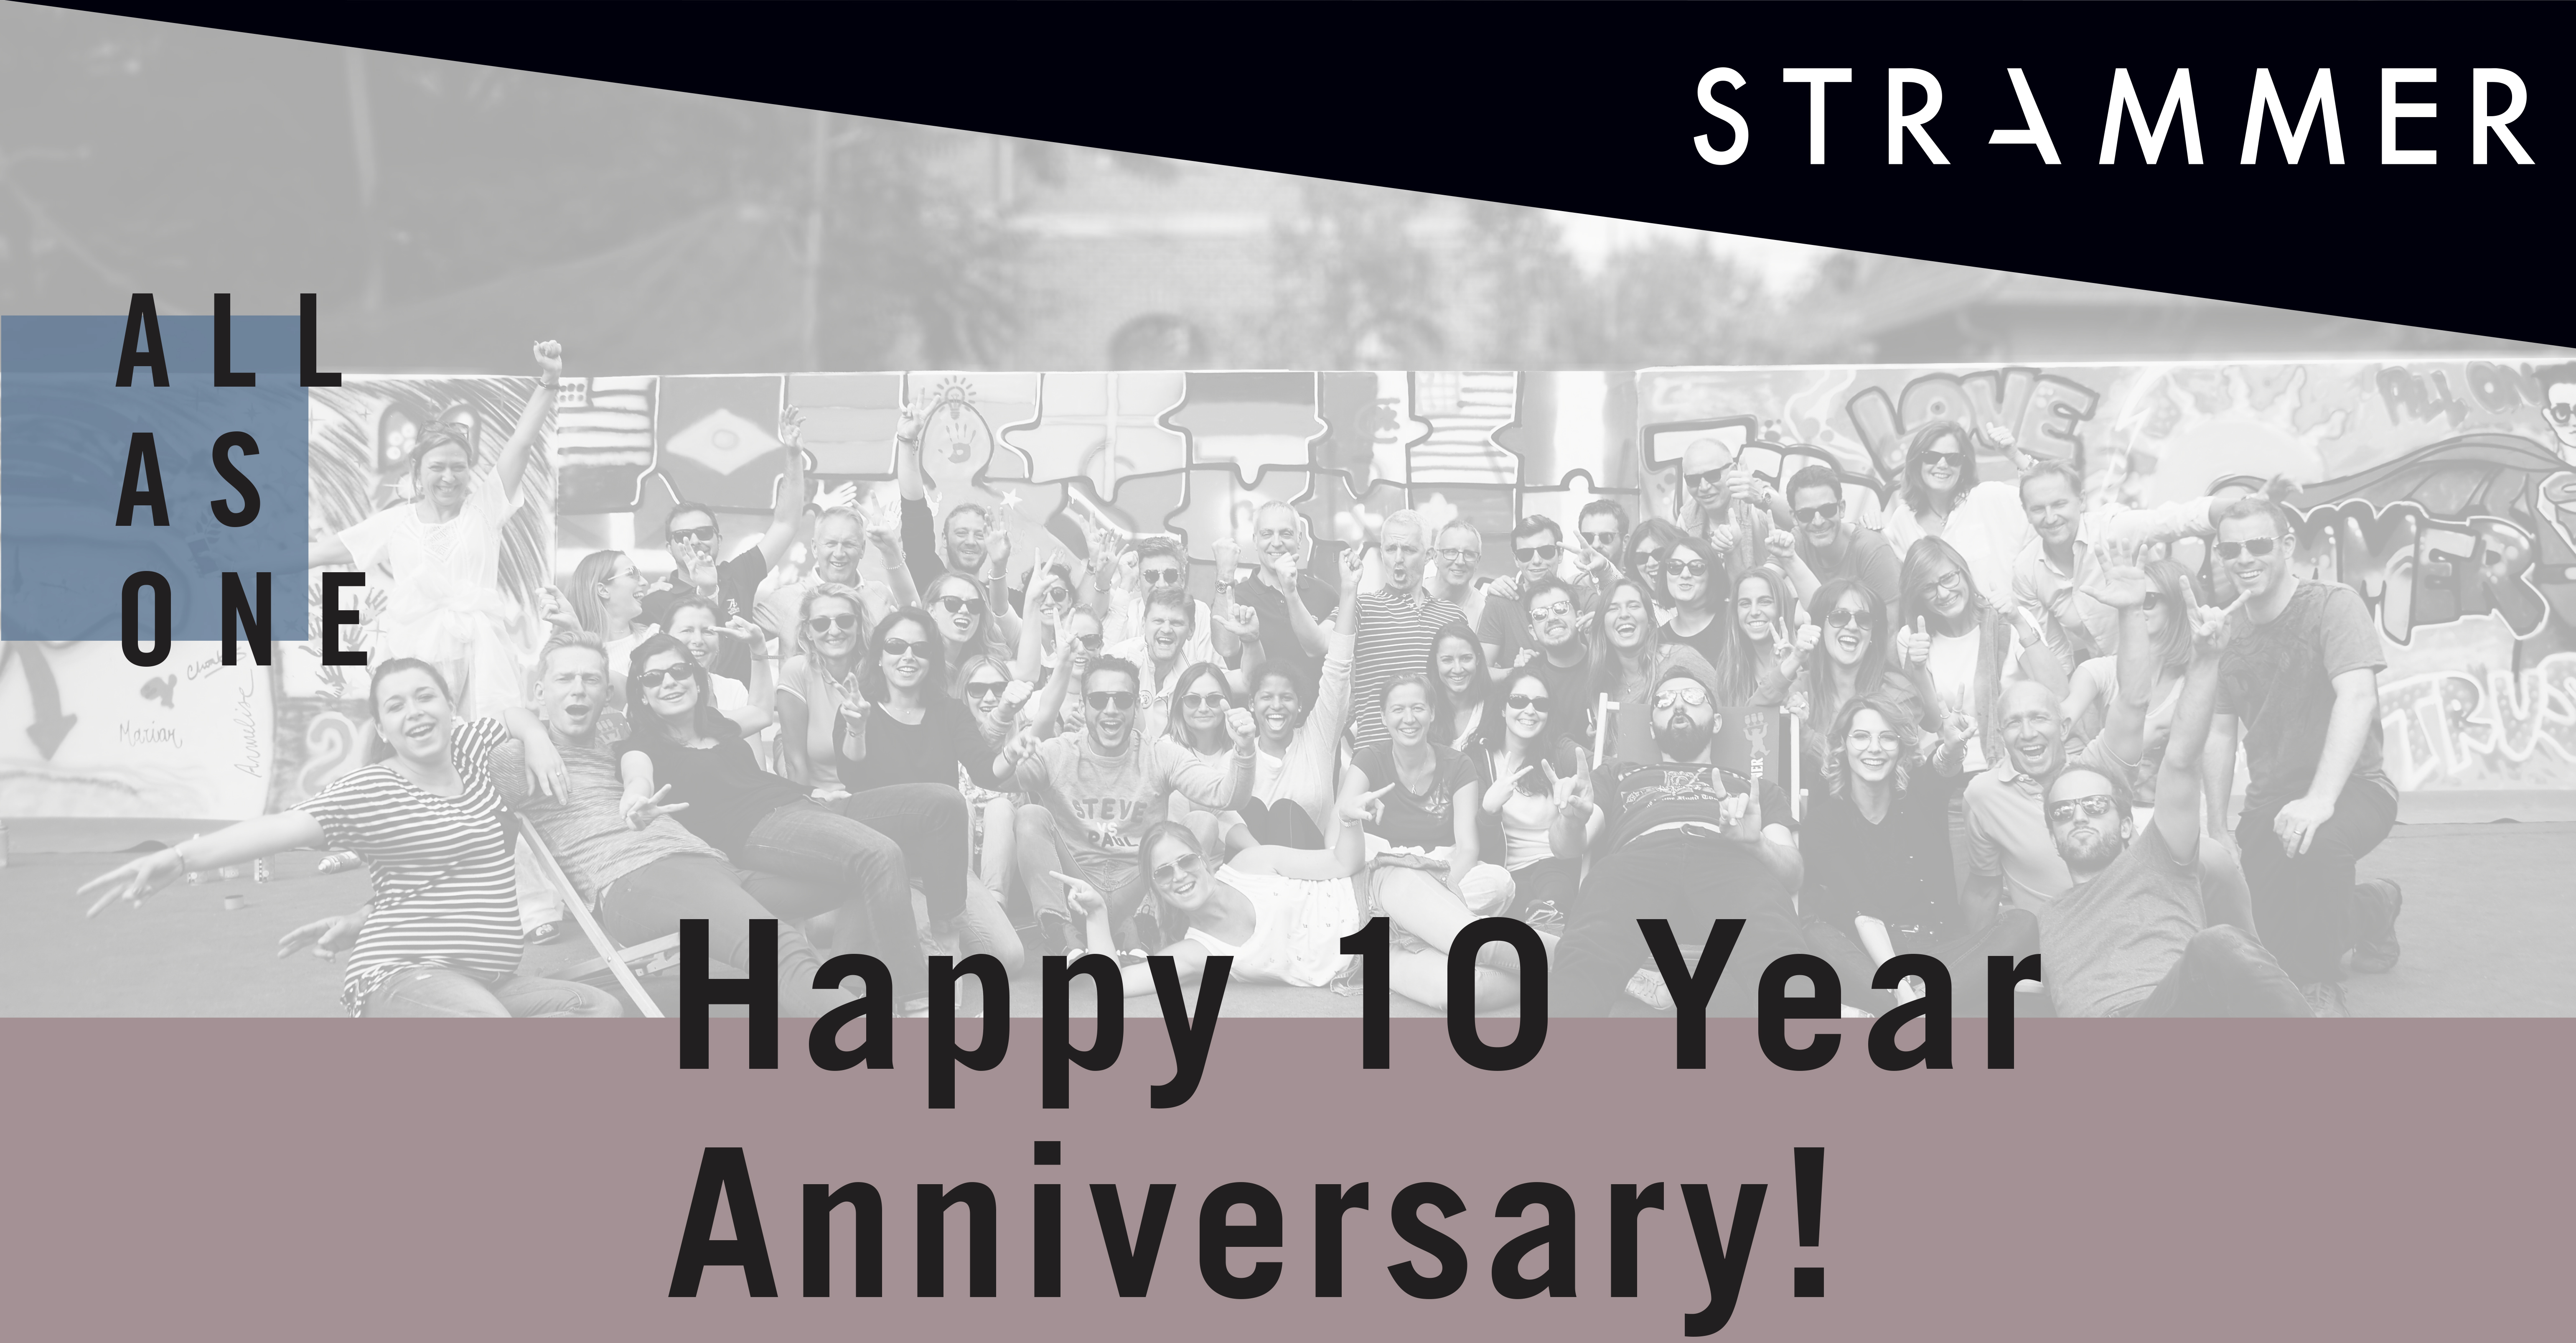 STRAMMER 10 years anniversary